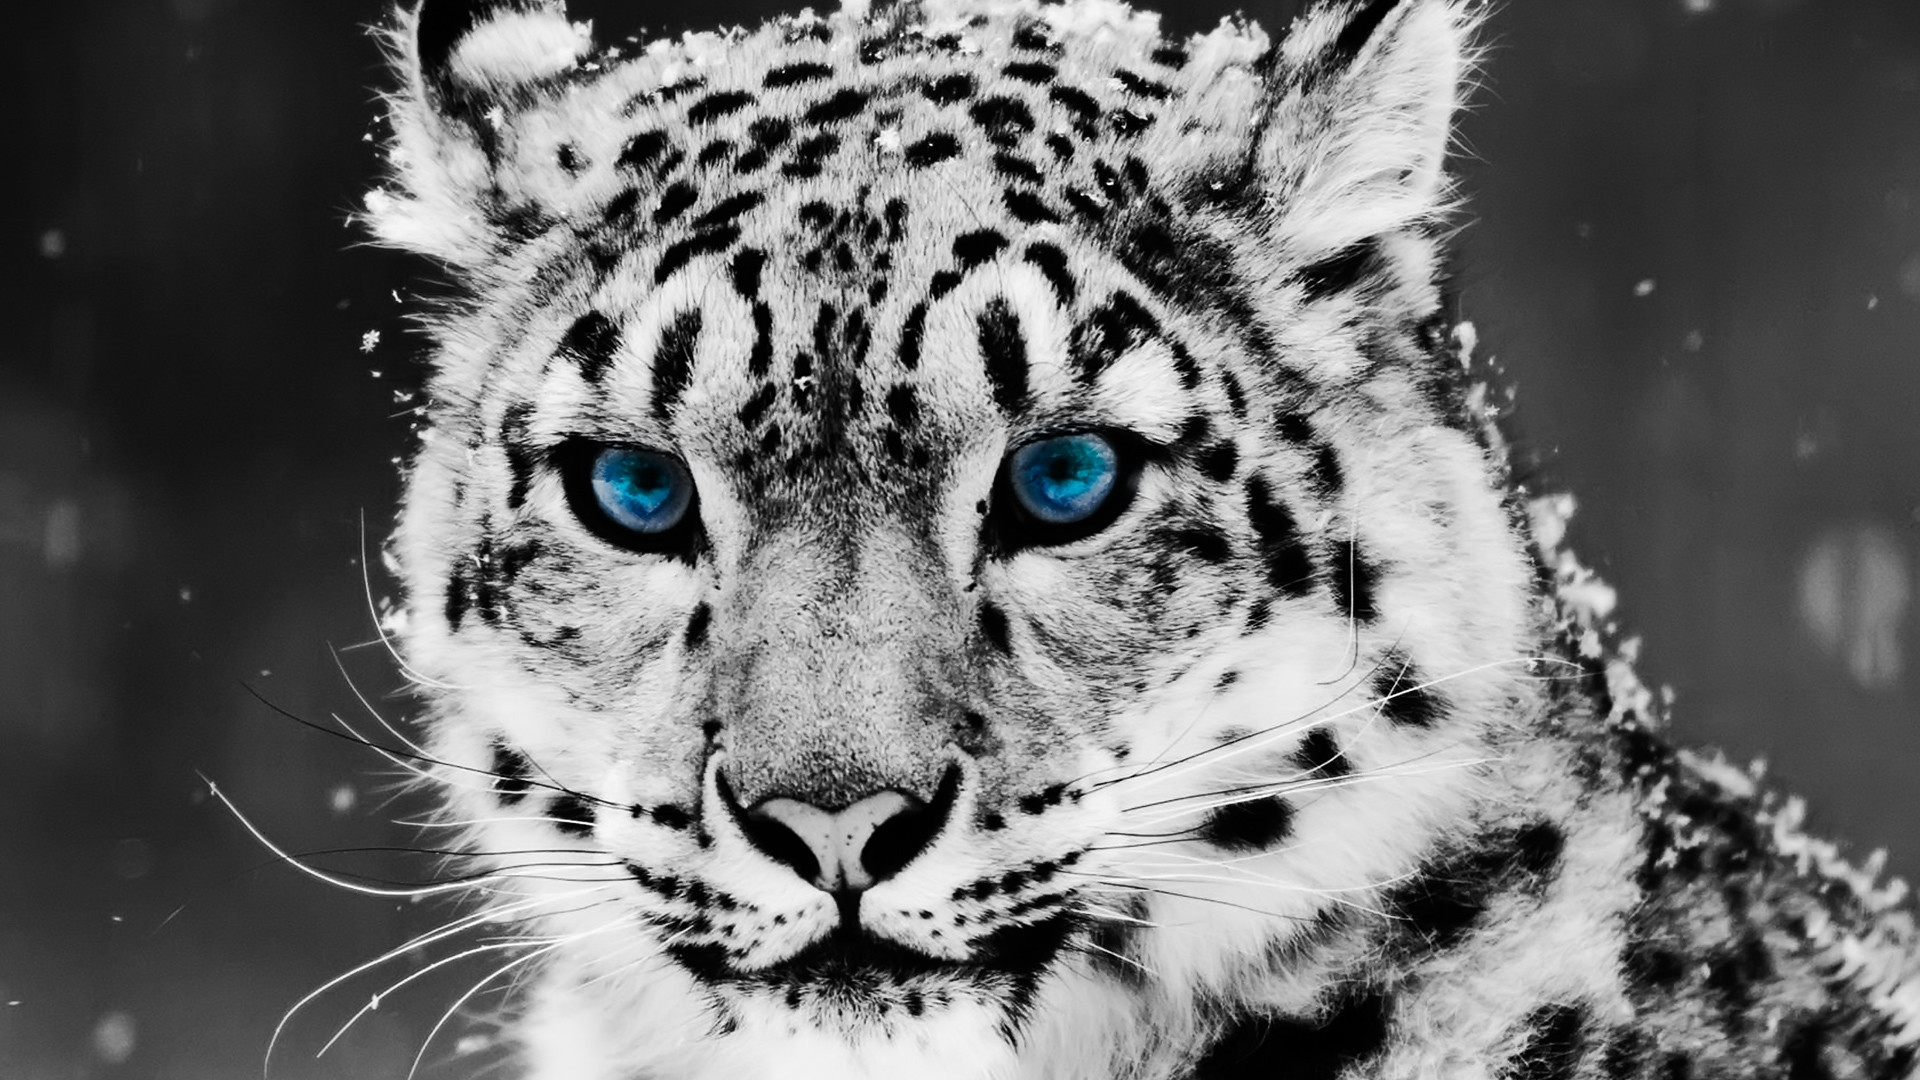 1920x1080 animals snow leopard full hd 1920Ã1080 wallpapers download desktop  wallpapers amazing background images mac desktop wallpapers free pictures  smart phone ...